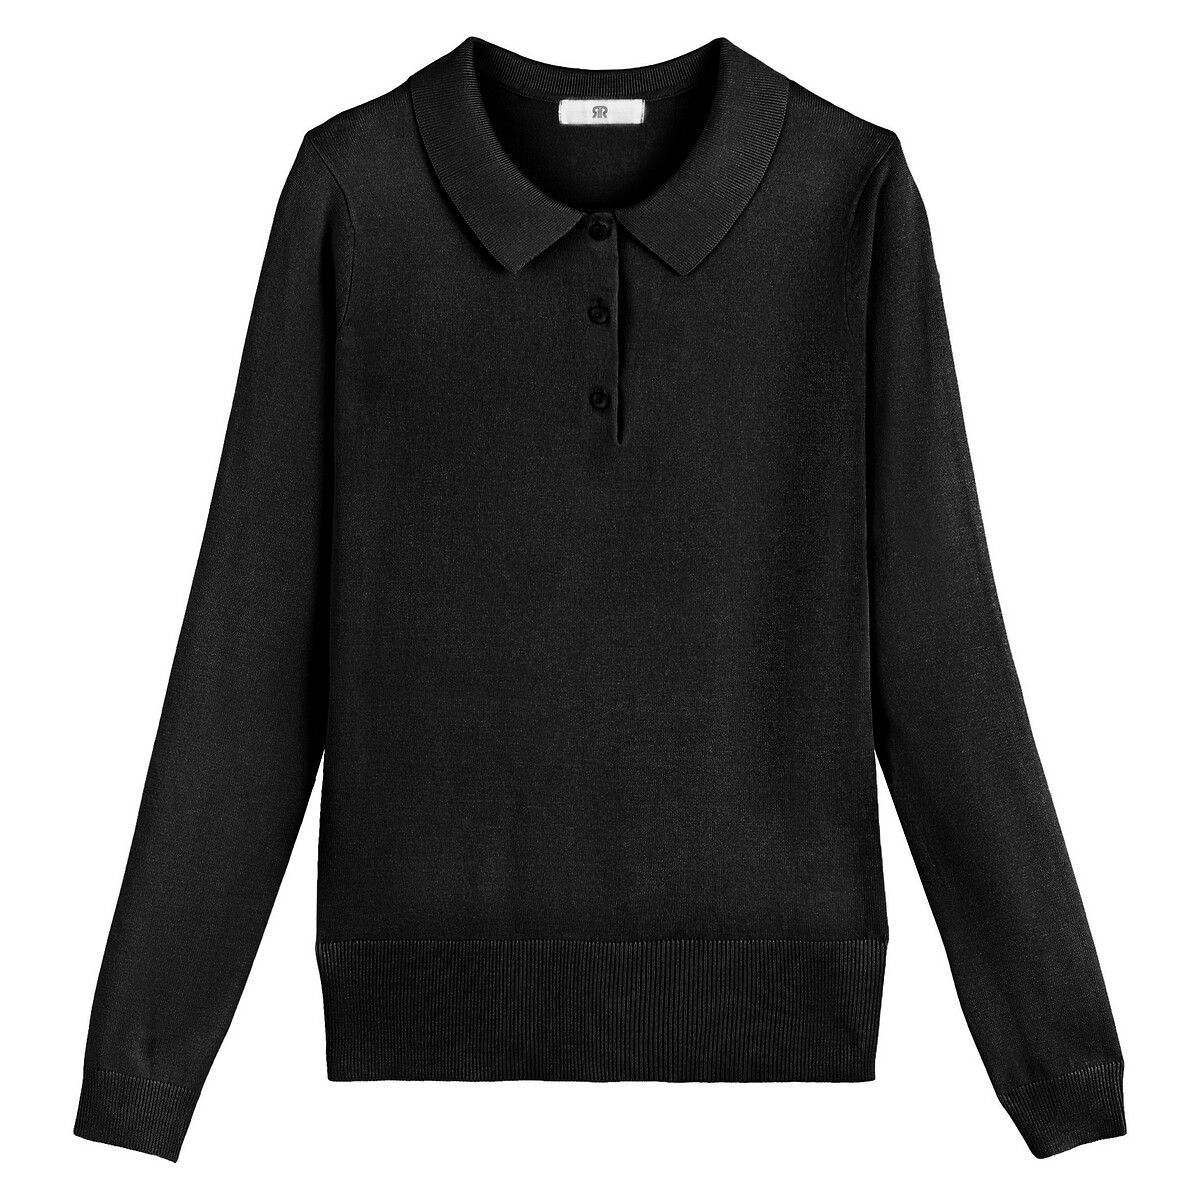 Пуловер С воротником-поло и длинными рукавами из тонкого трикотажа XS черный LaRedoute, размер XS - фото 5